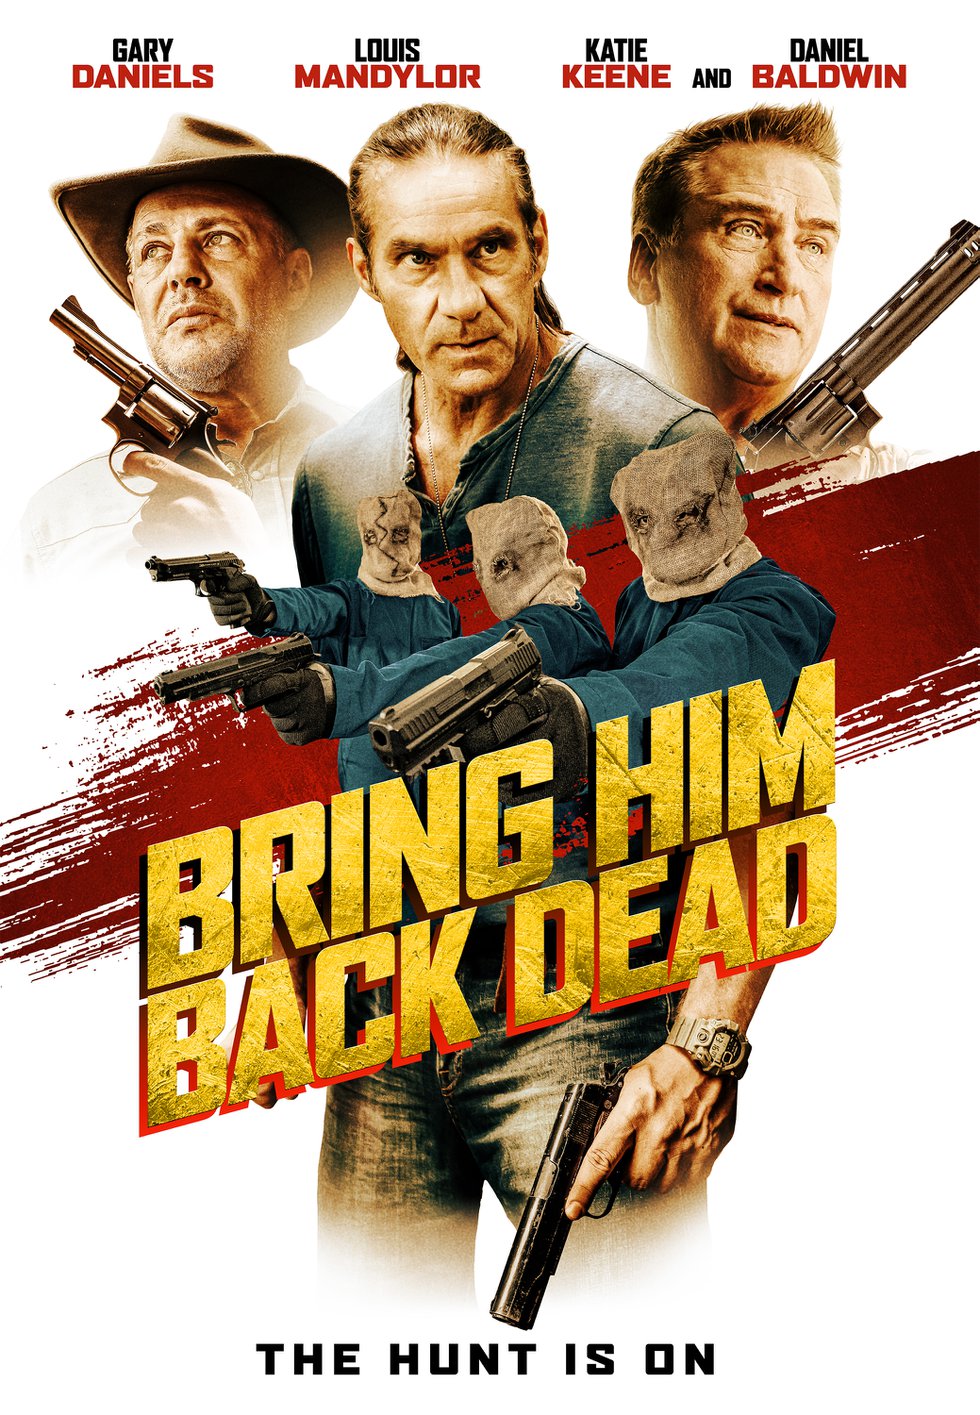 Bring Him Back Dead Action Film